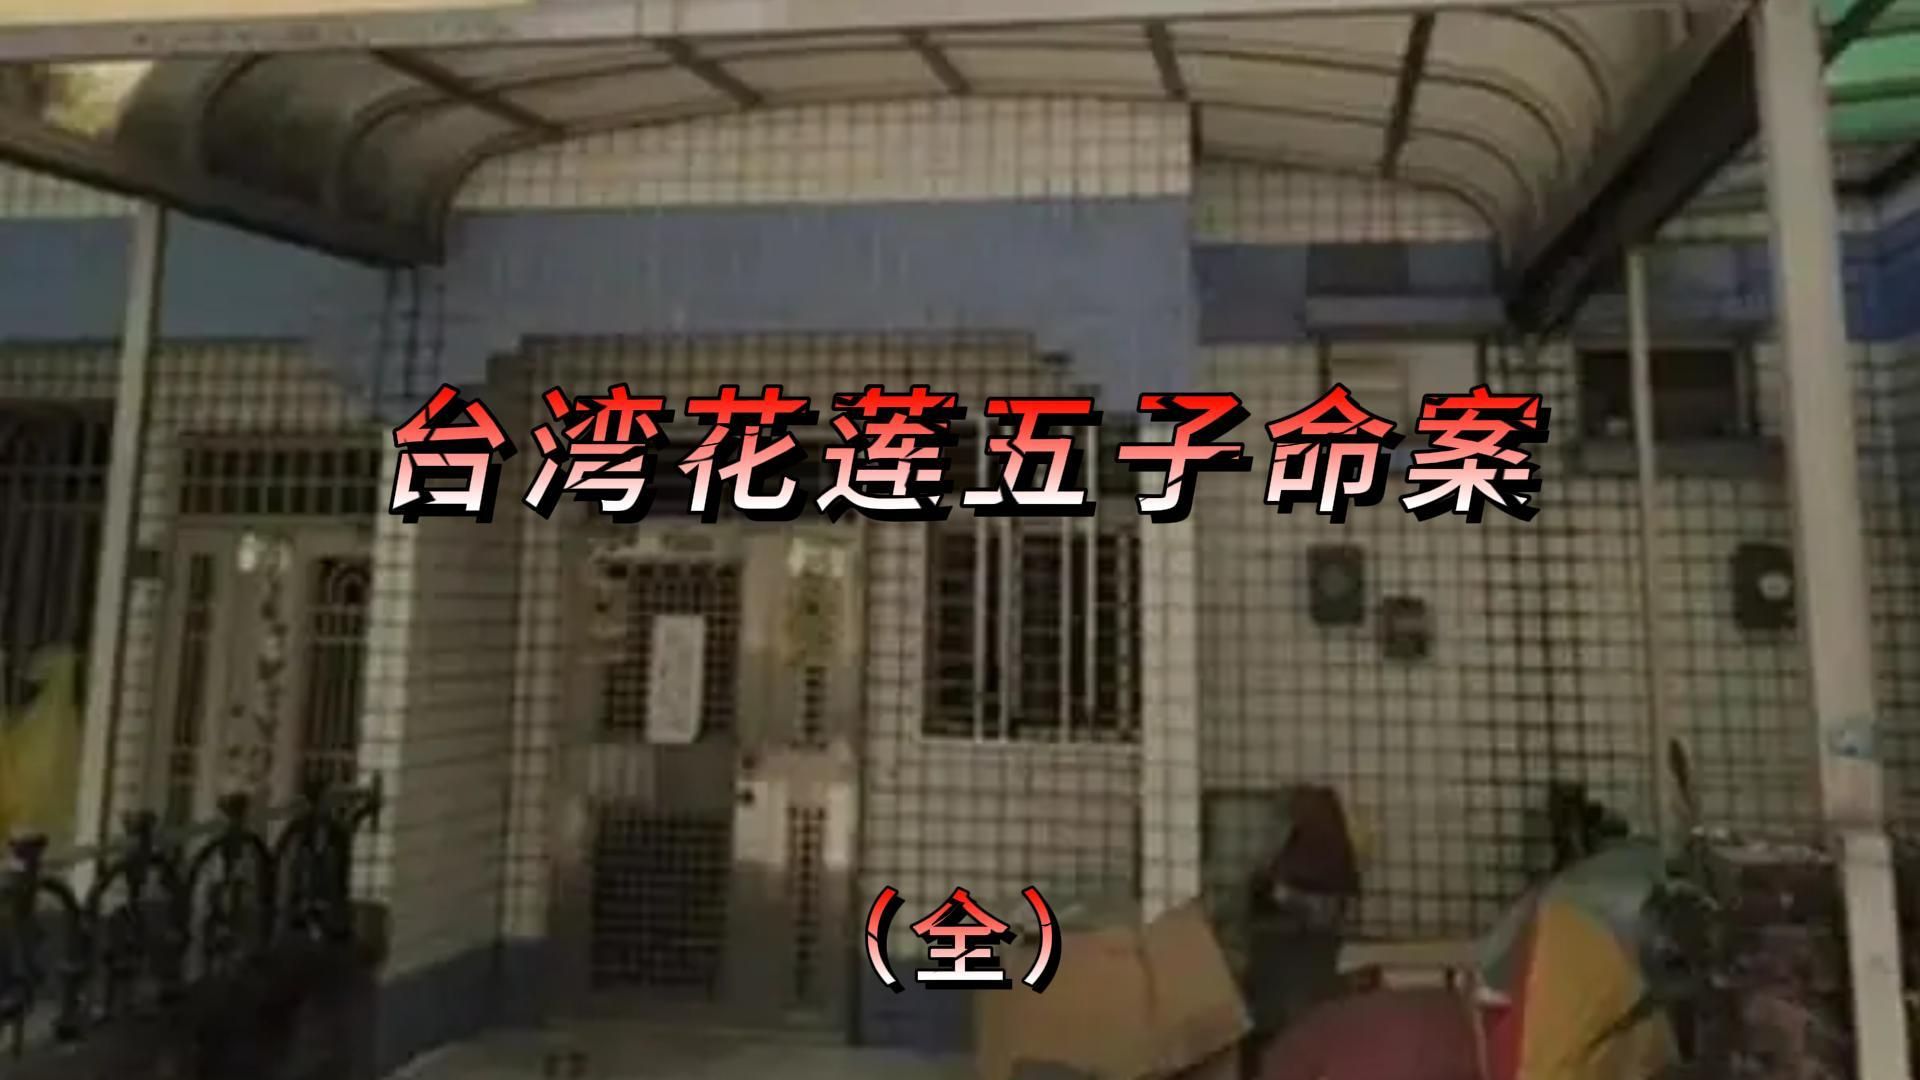 2006年台湾花莲五子灭门血案!五个孩子被残忍杀害!